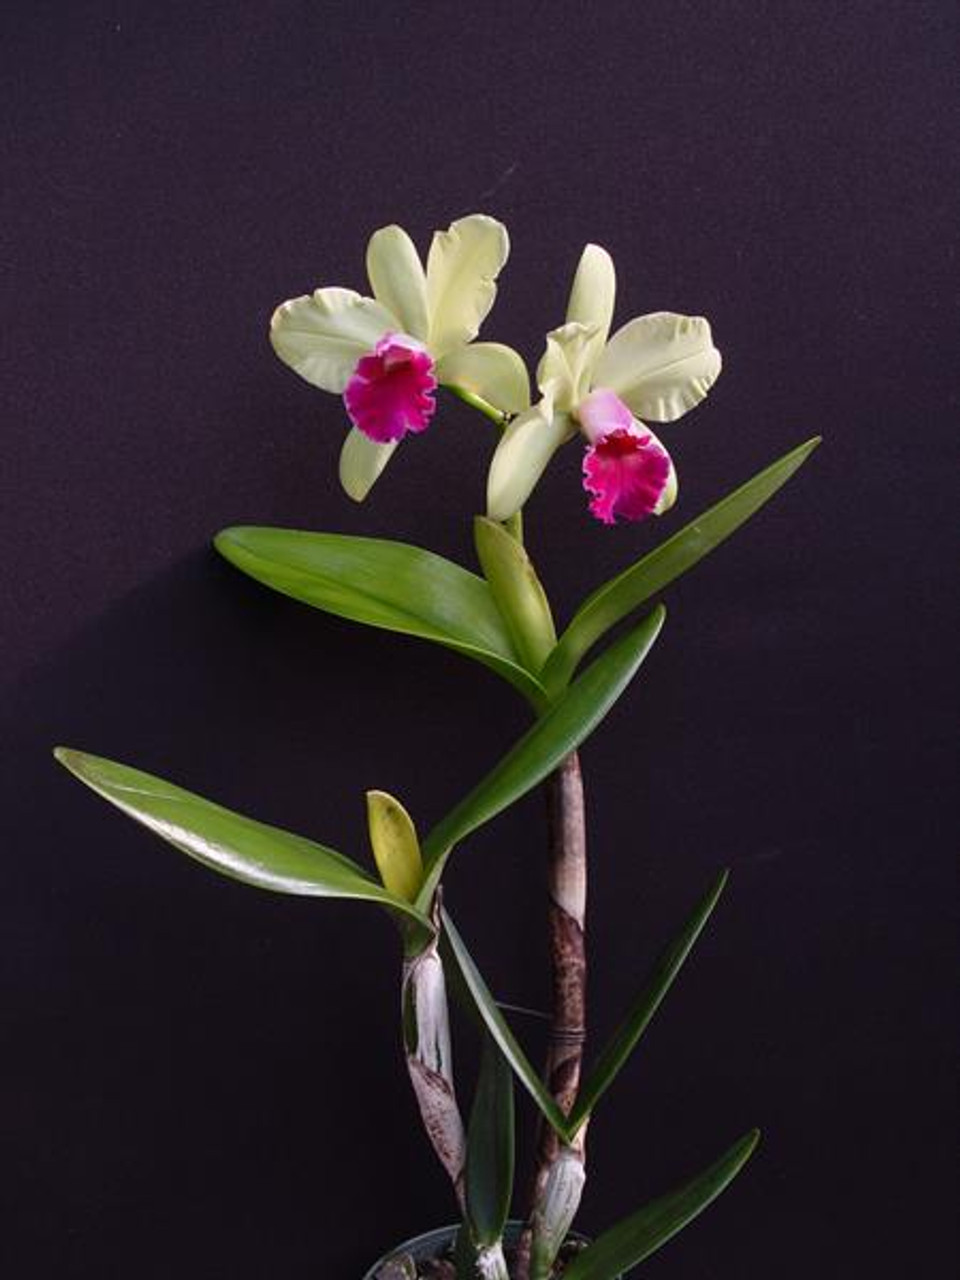 Blc. Yen Surprise 'Seiko' - OrchidWeb